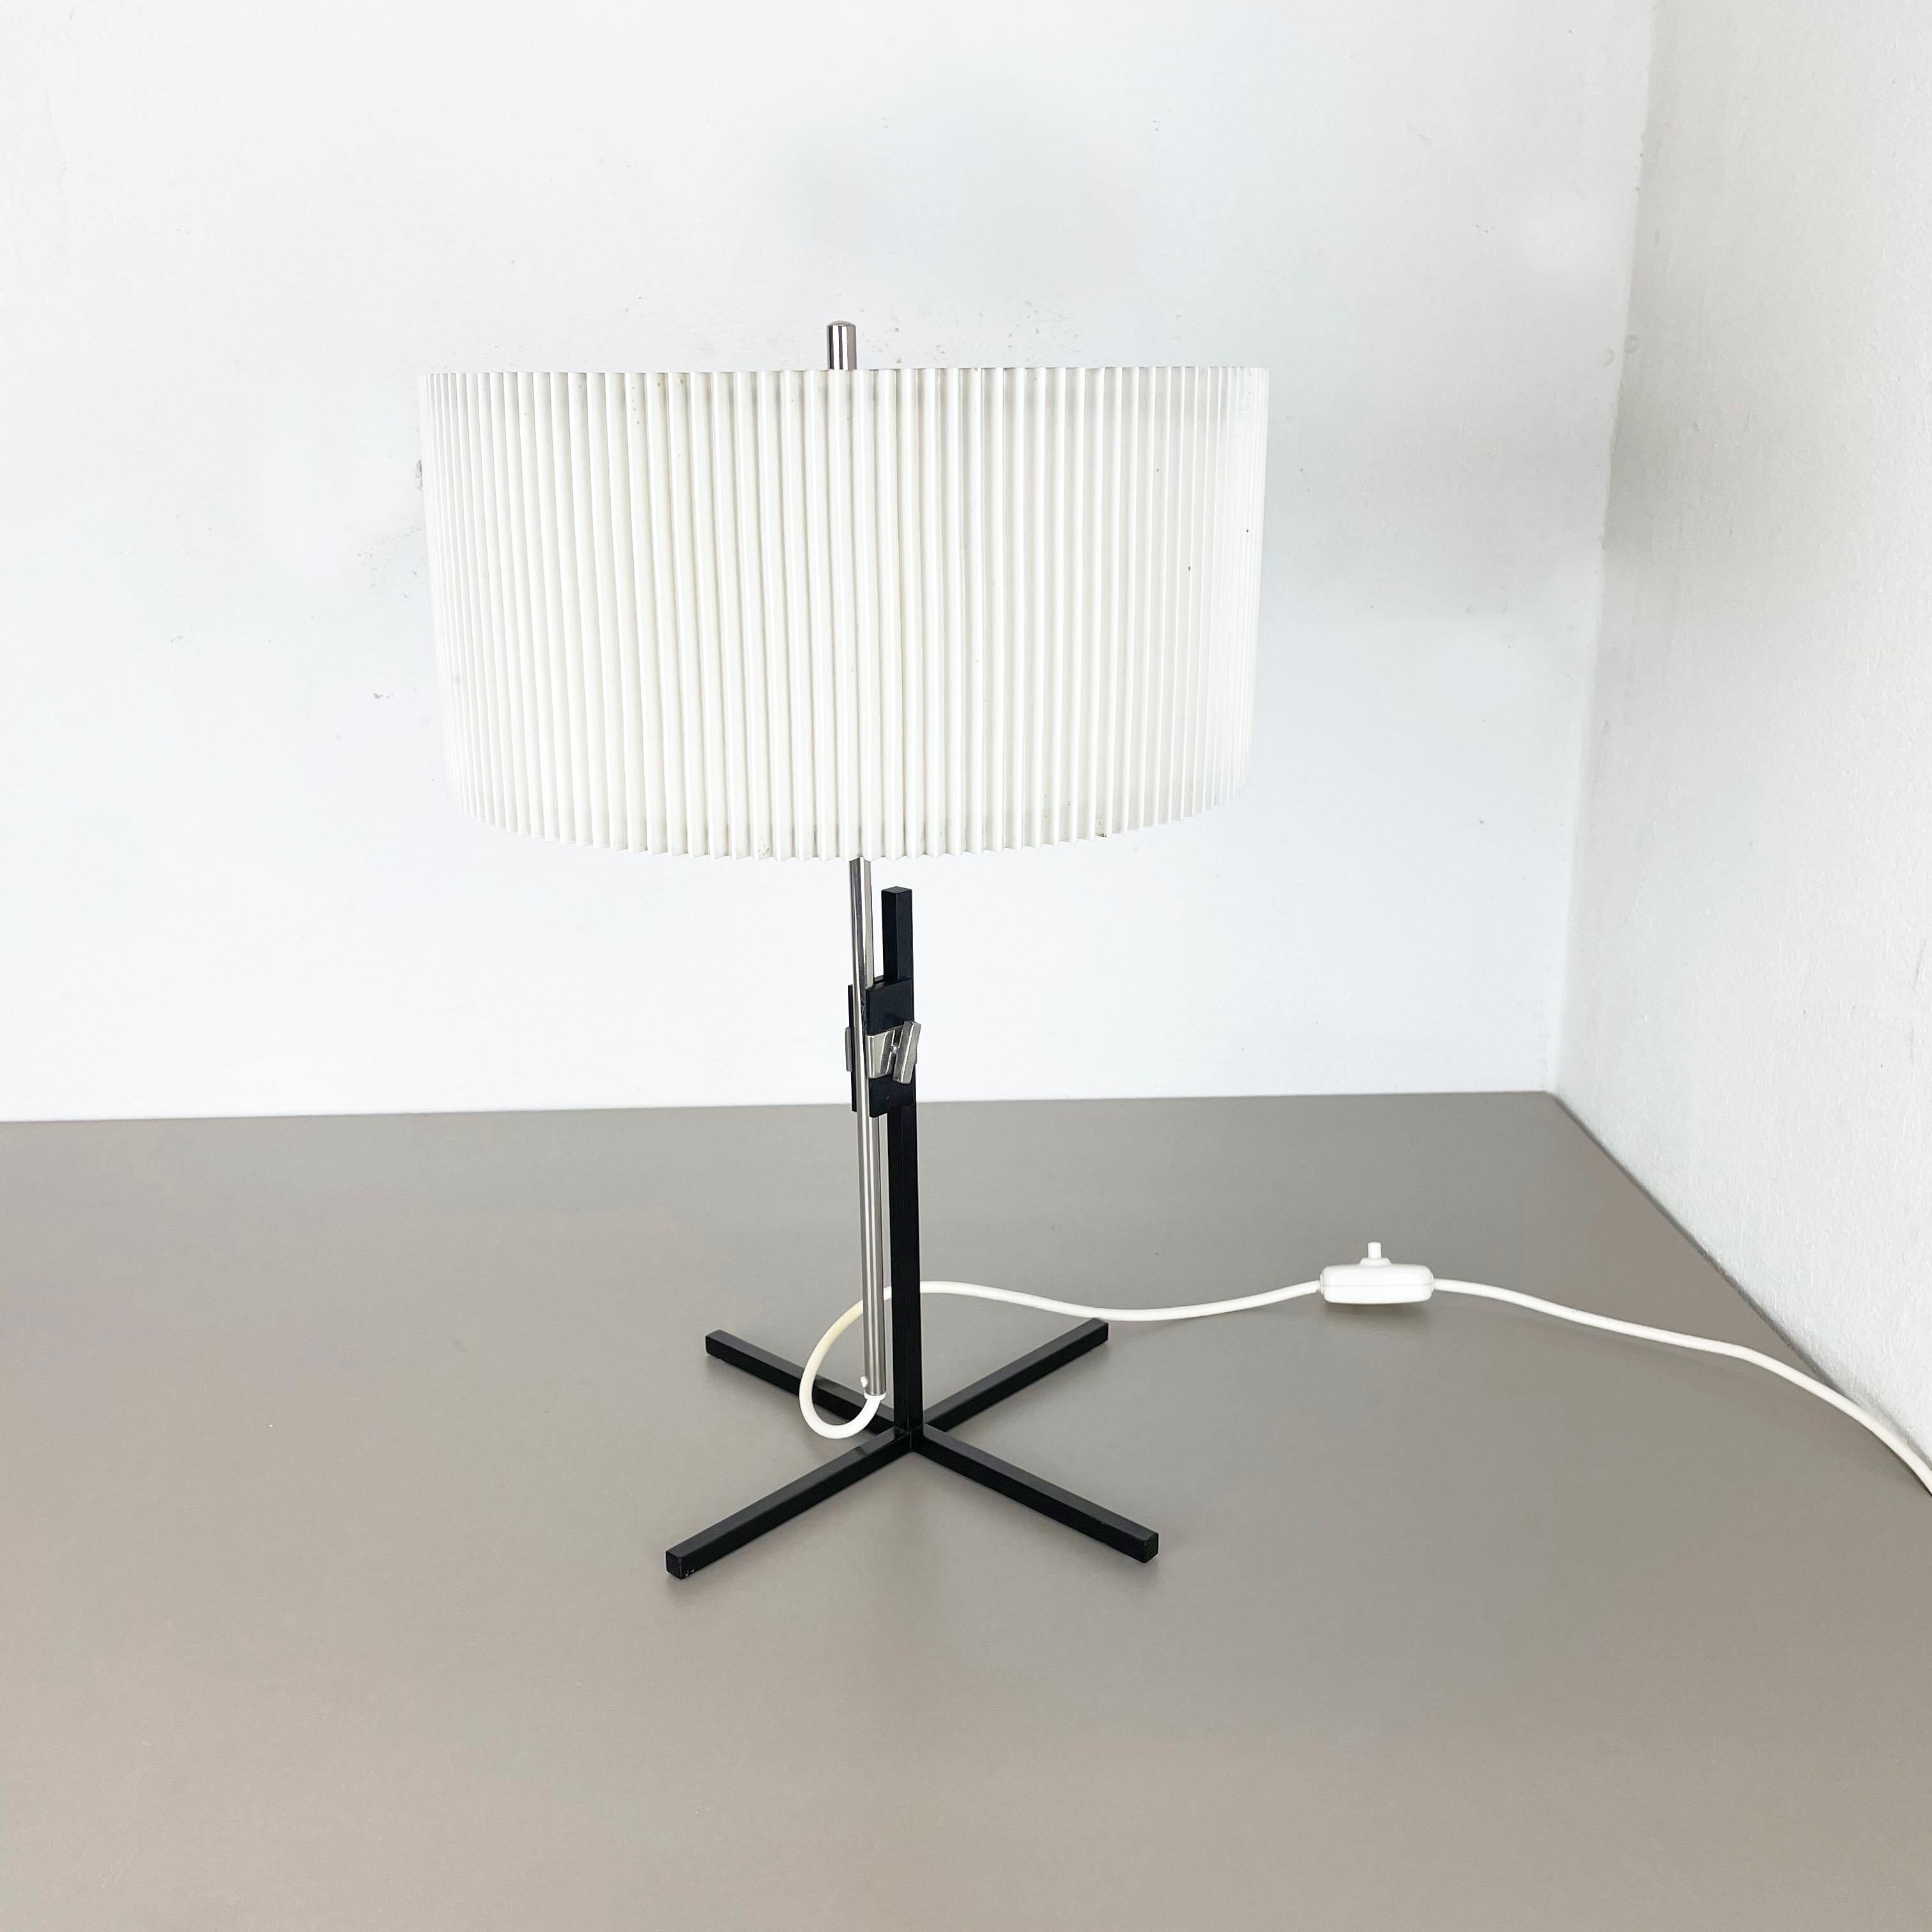 Article :

Lampe de table


Producteur :

Kaiser Leuchten, Allemagne


Origine :

Allemagne



Âge :

1960s






Cette lampe de table des années 1960 a été fabriquée par Kaiser Leuchten en Allemagne. La base de la lampe est